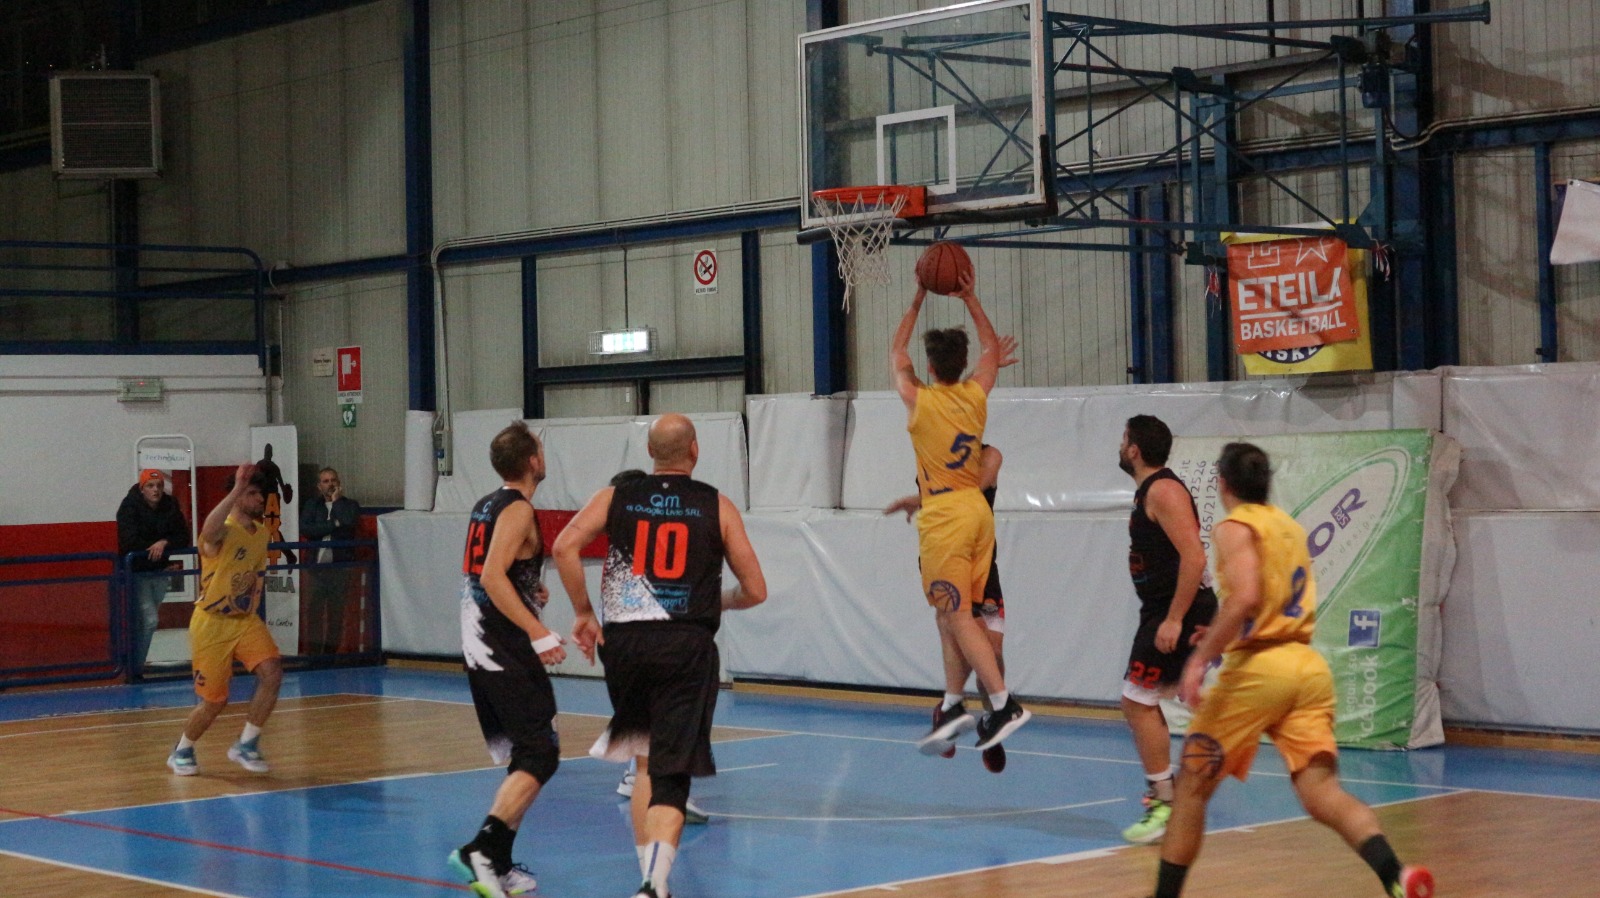 SBK basket school Aosta Parolo Daudry